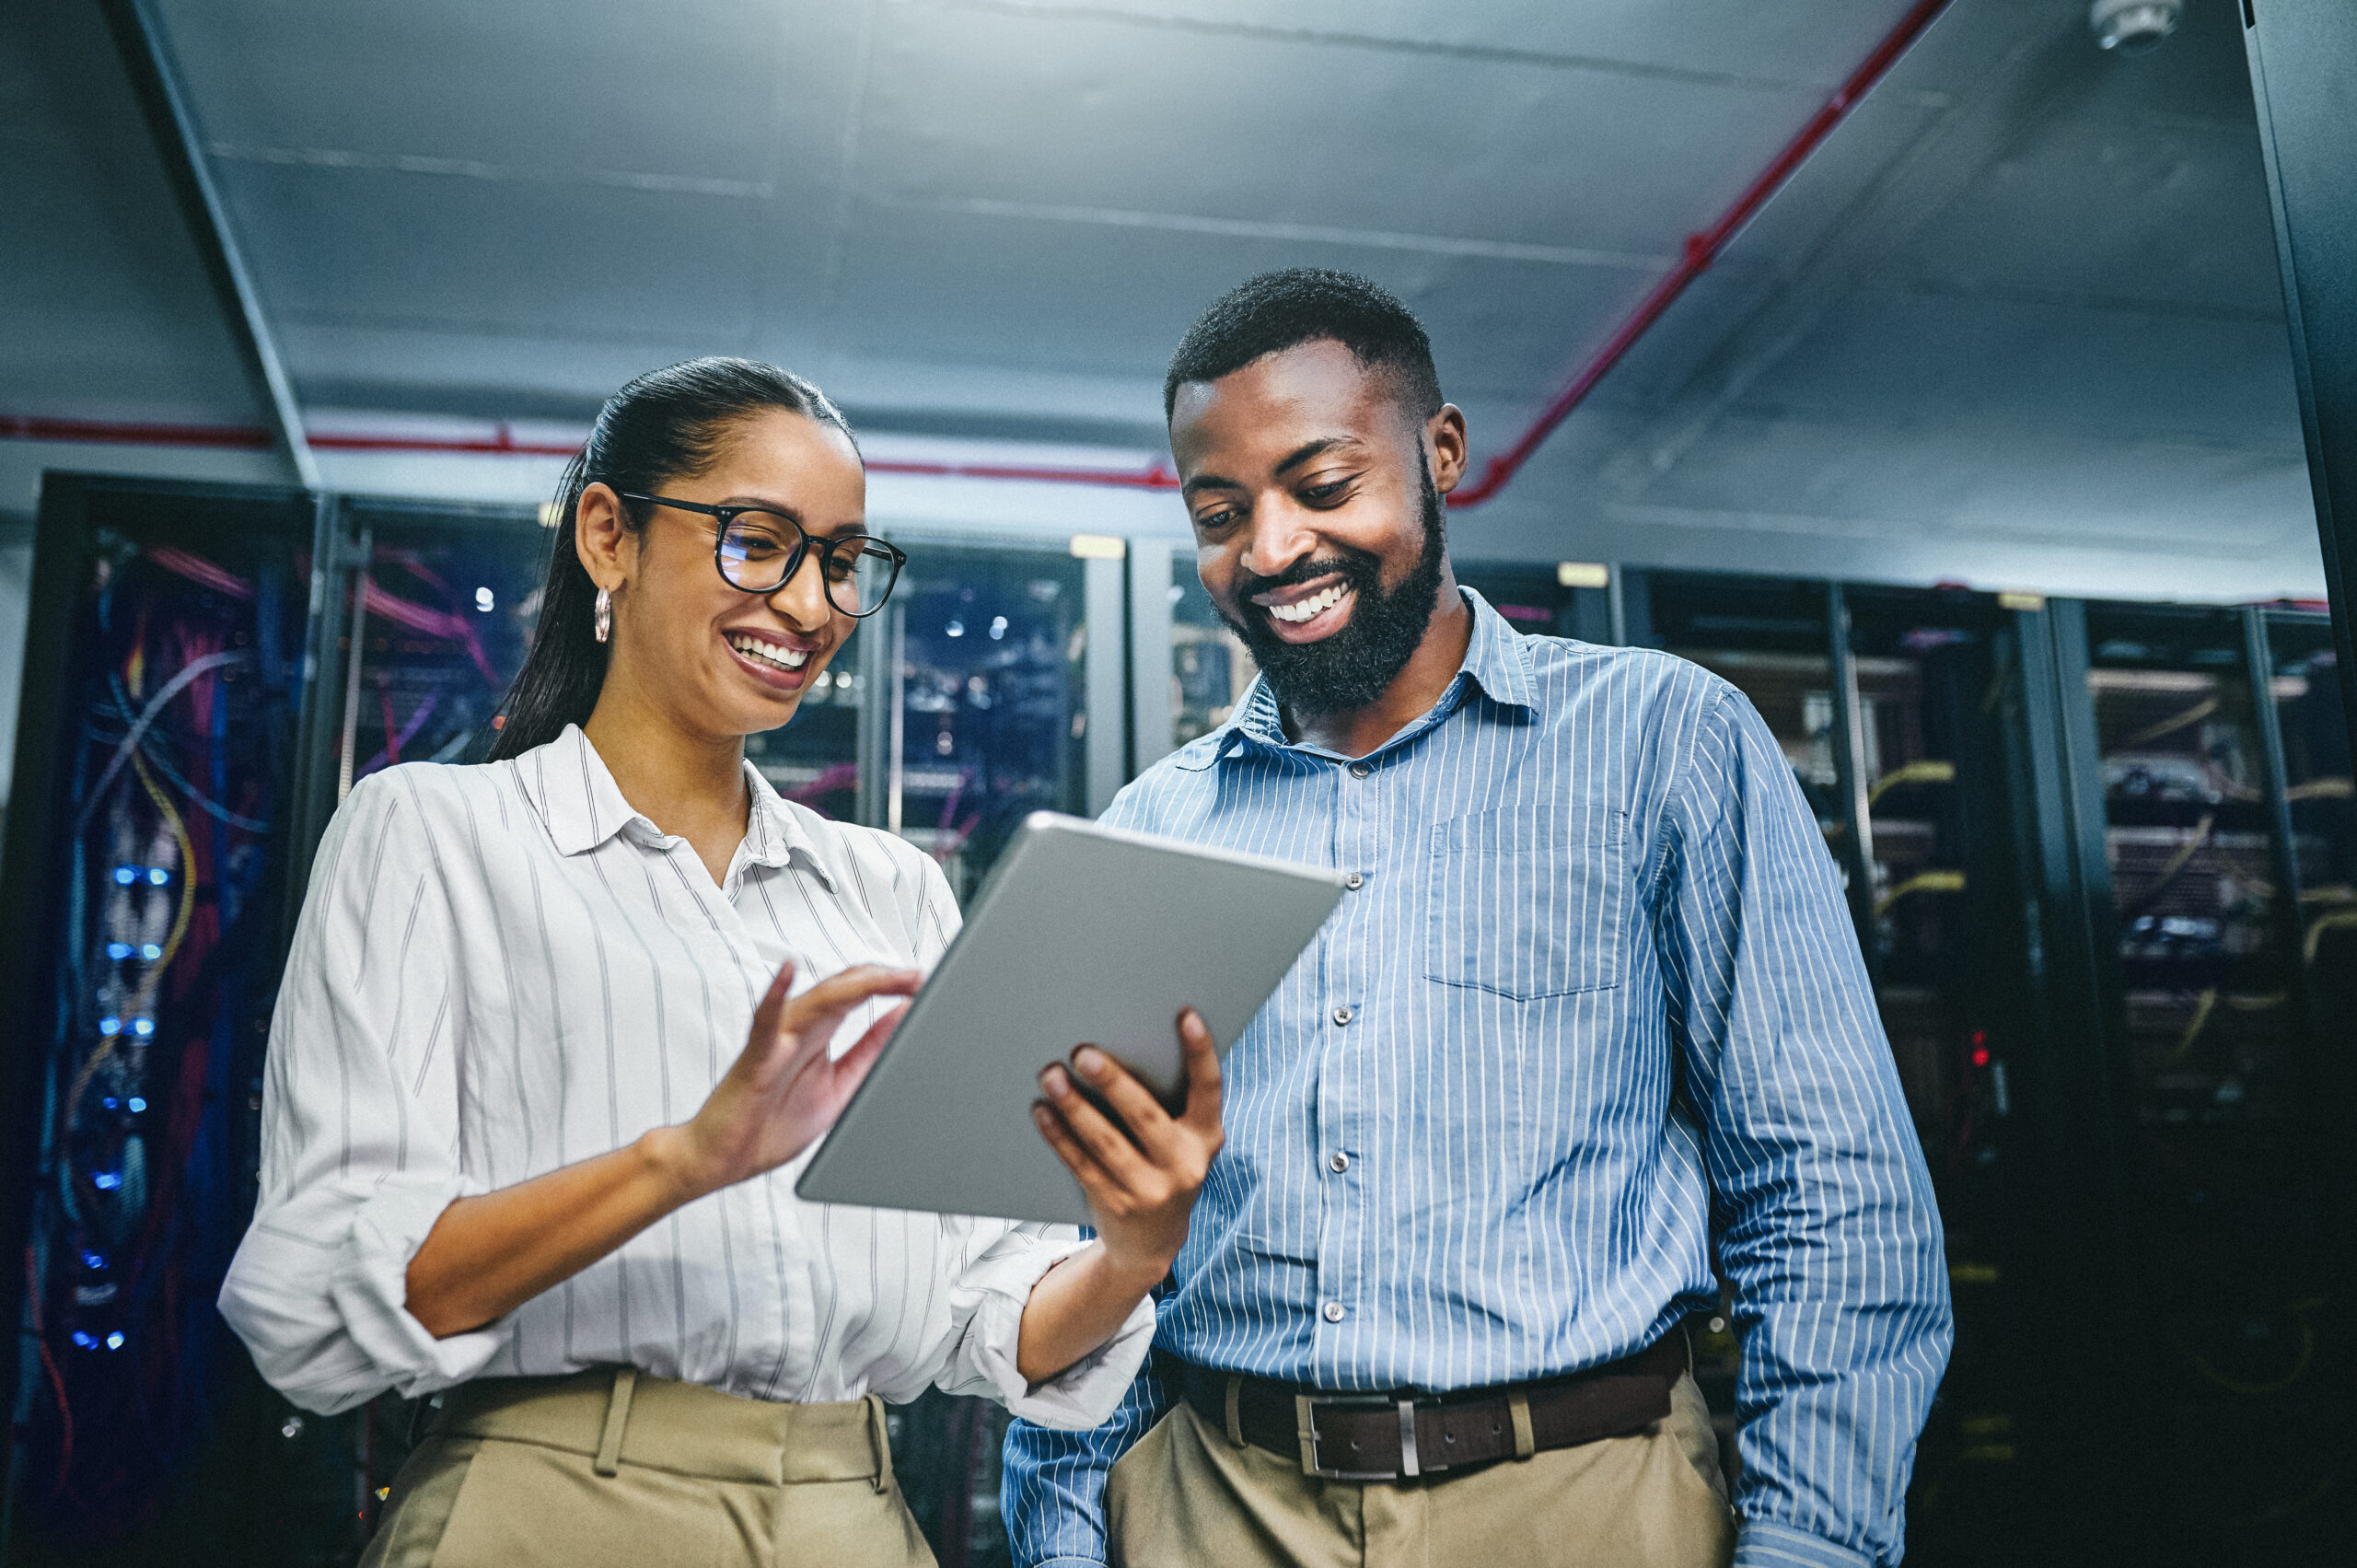 Fotografia colorida em que aparecem um homem e uma mulher. Eles são negros, vestes roupas sociais e olham para a tela de um tablet sorridentes num ambiente corporativo.